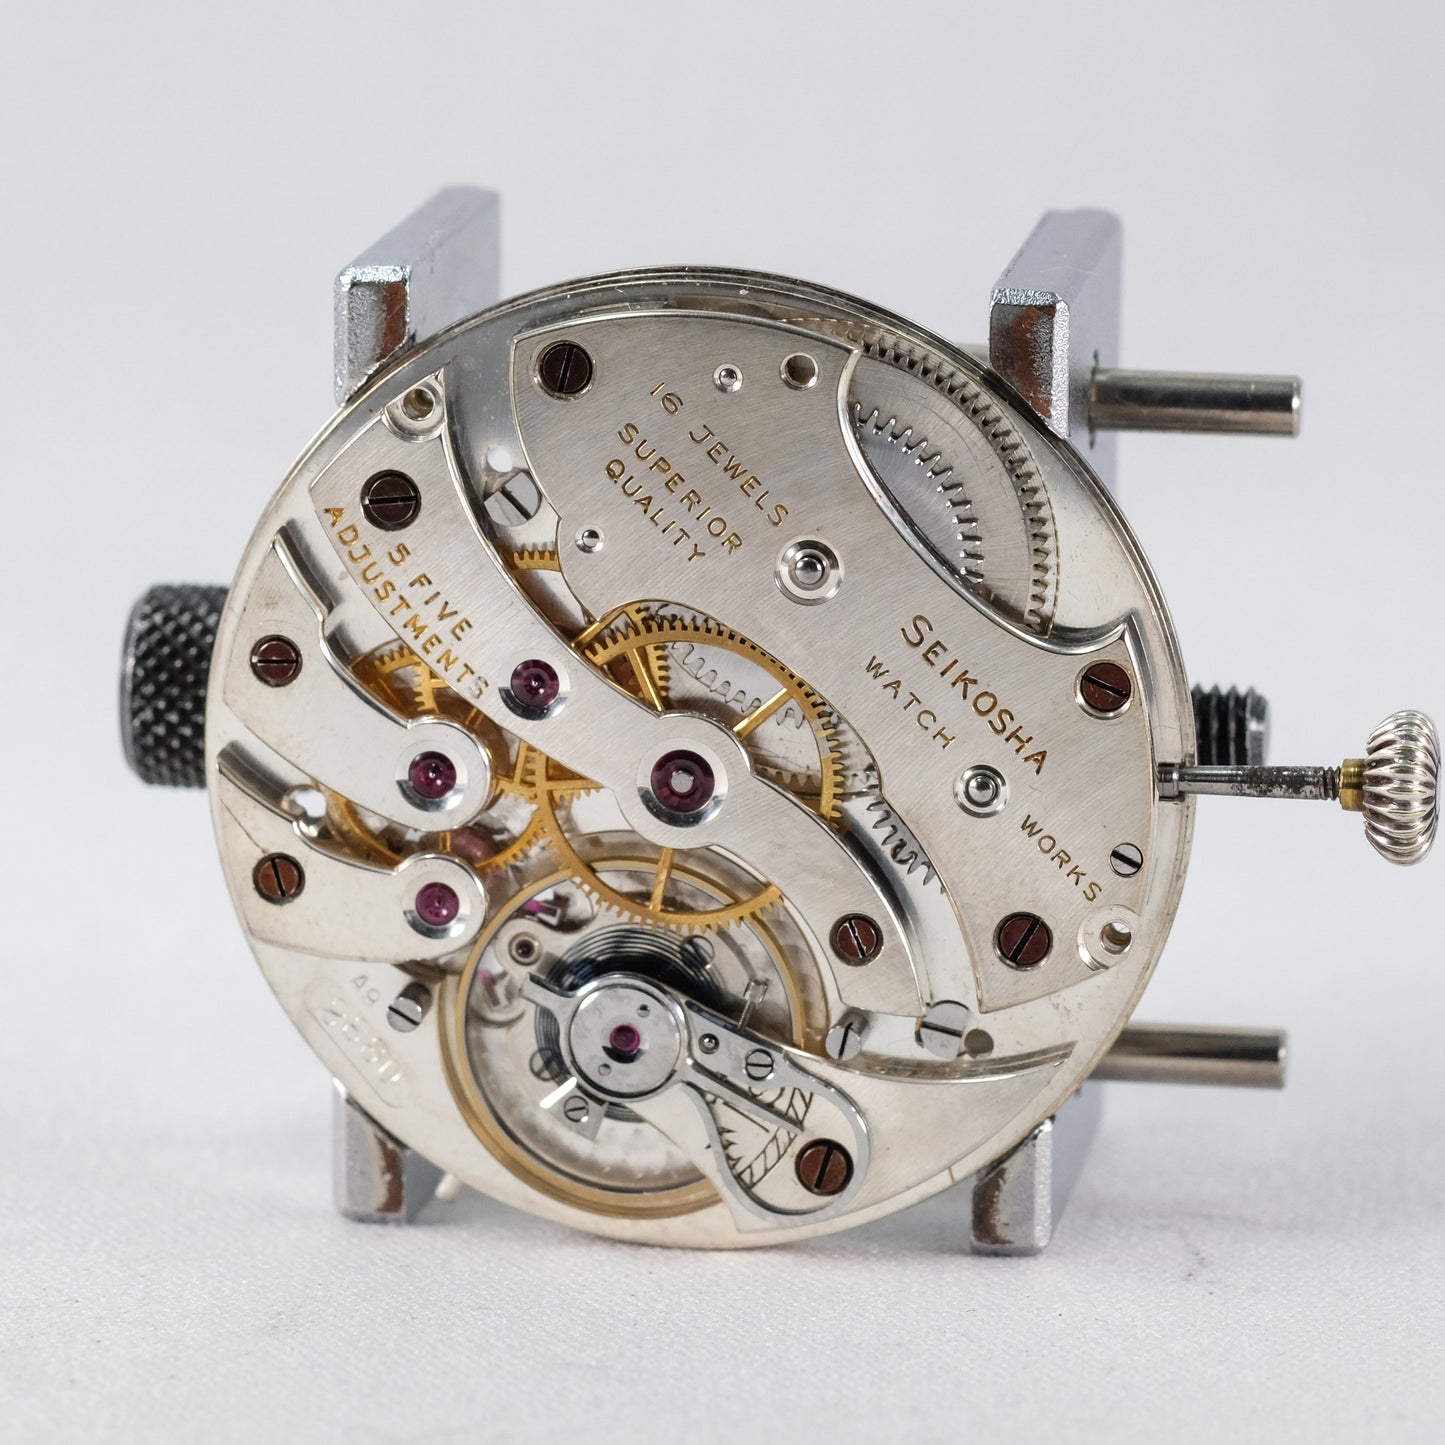 1940 Rare Seikosha "Nardin" gift from the Emperor pocket watch